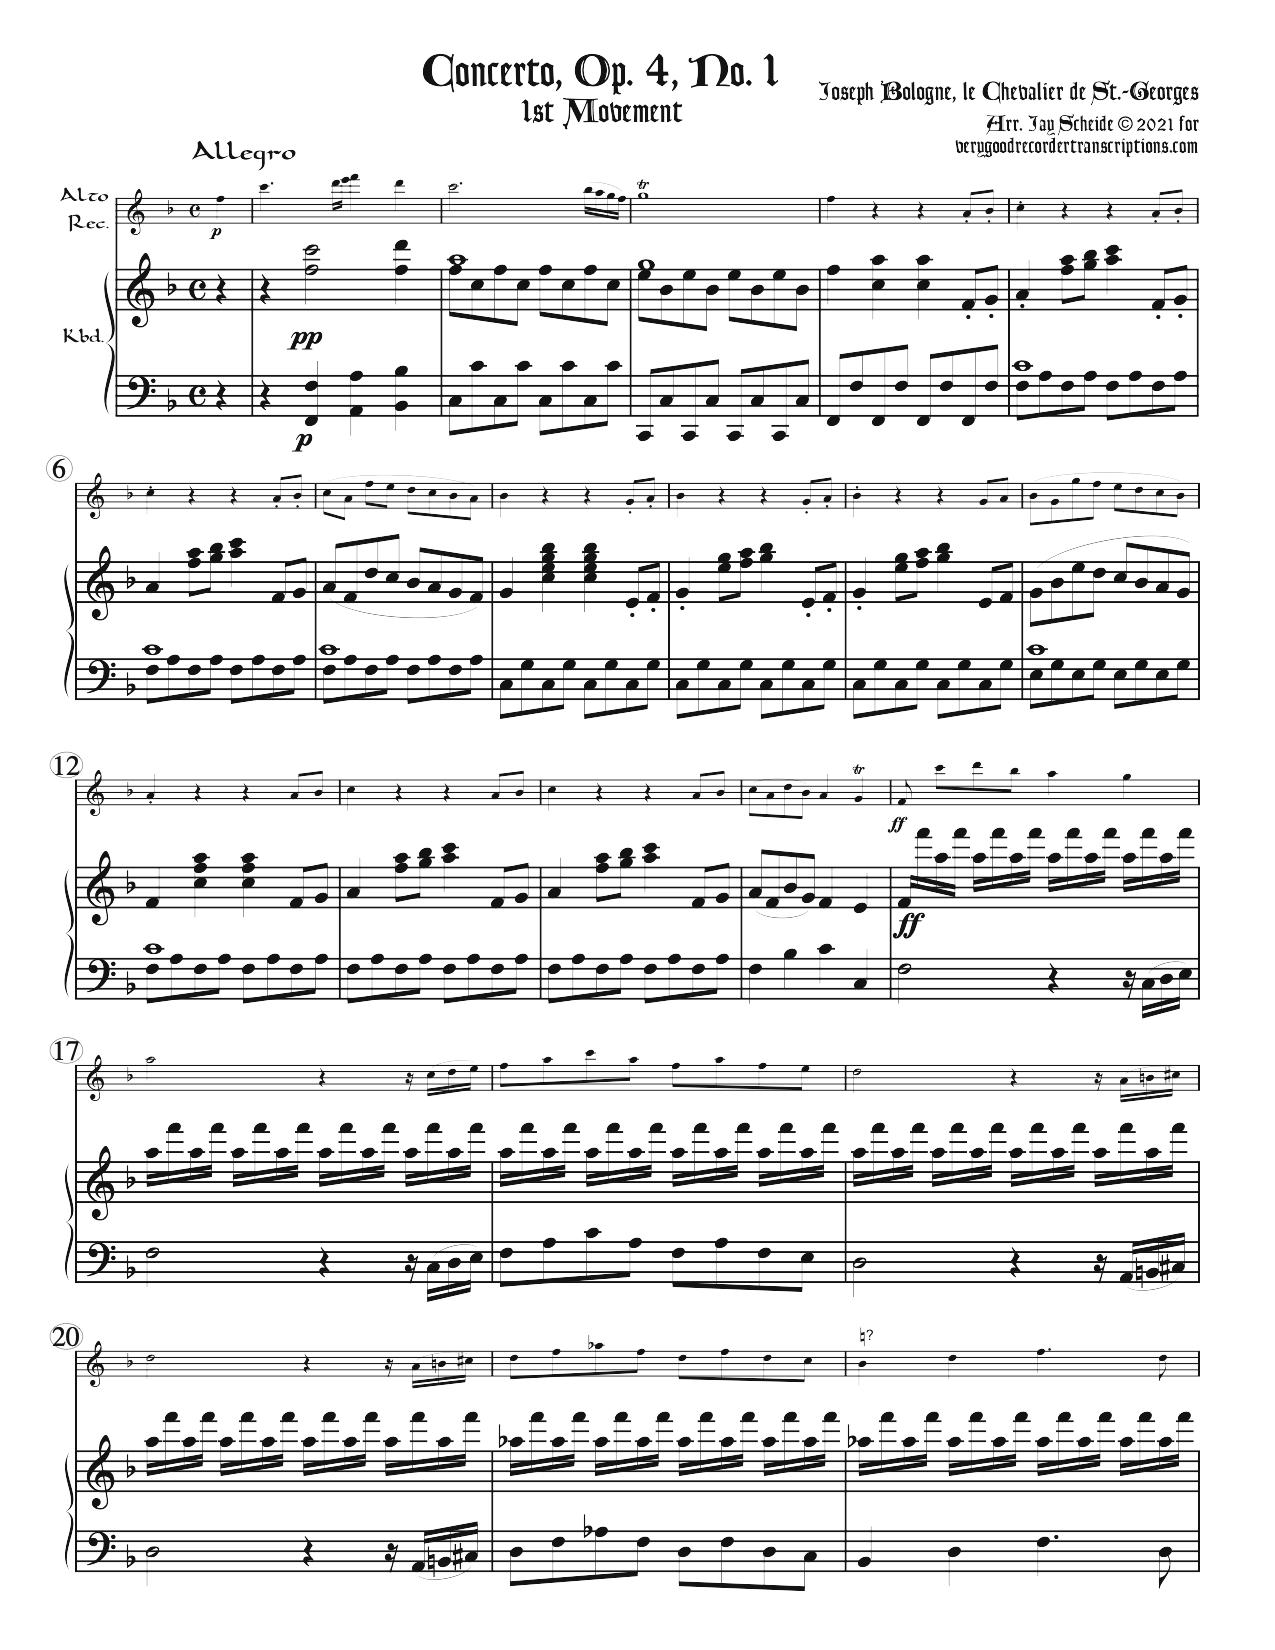 Seven Concertos, Op. 2, No. 1 & 2, Op. 4, No. 1; Op. 5, No. 1 & 2, and Op. 7, No. 1 & 2.